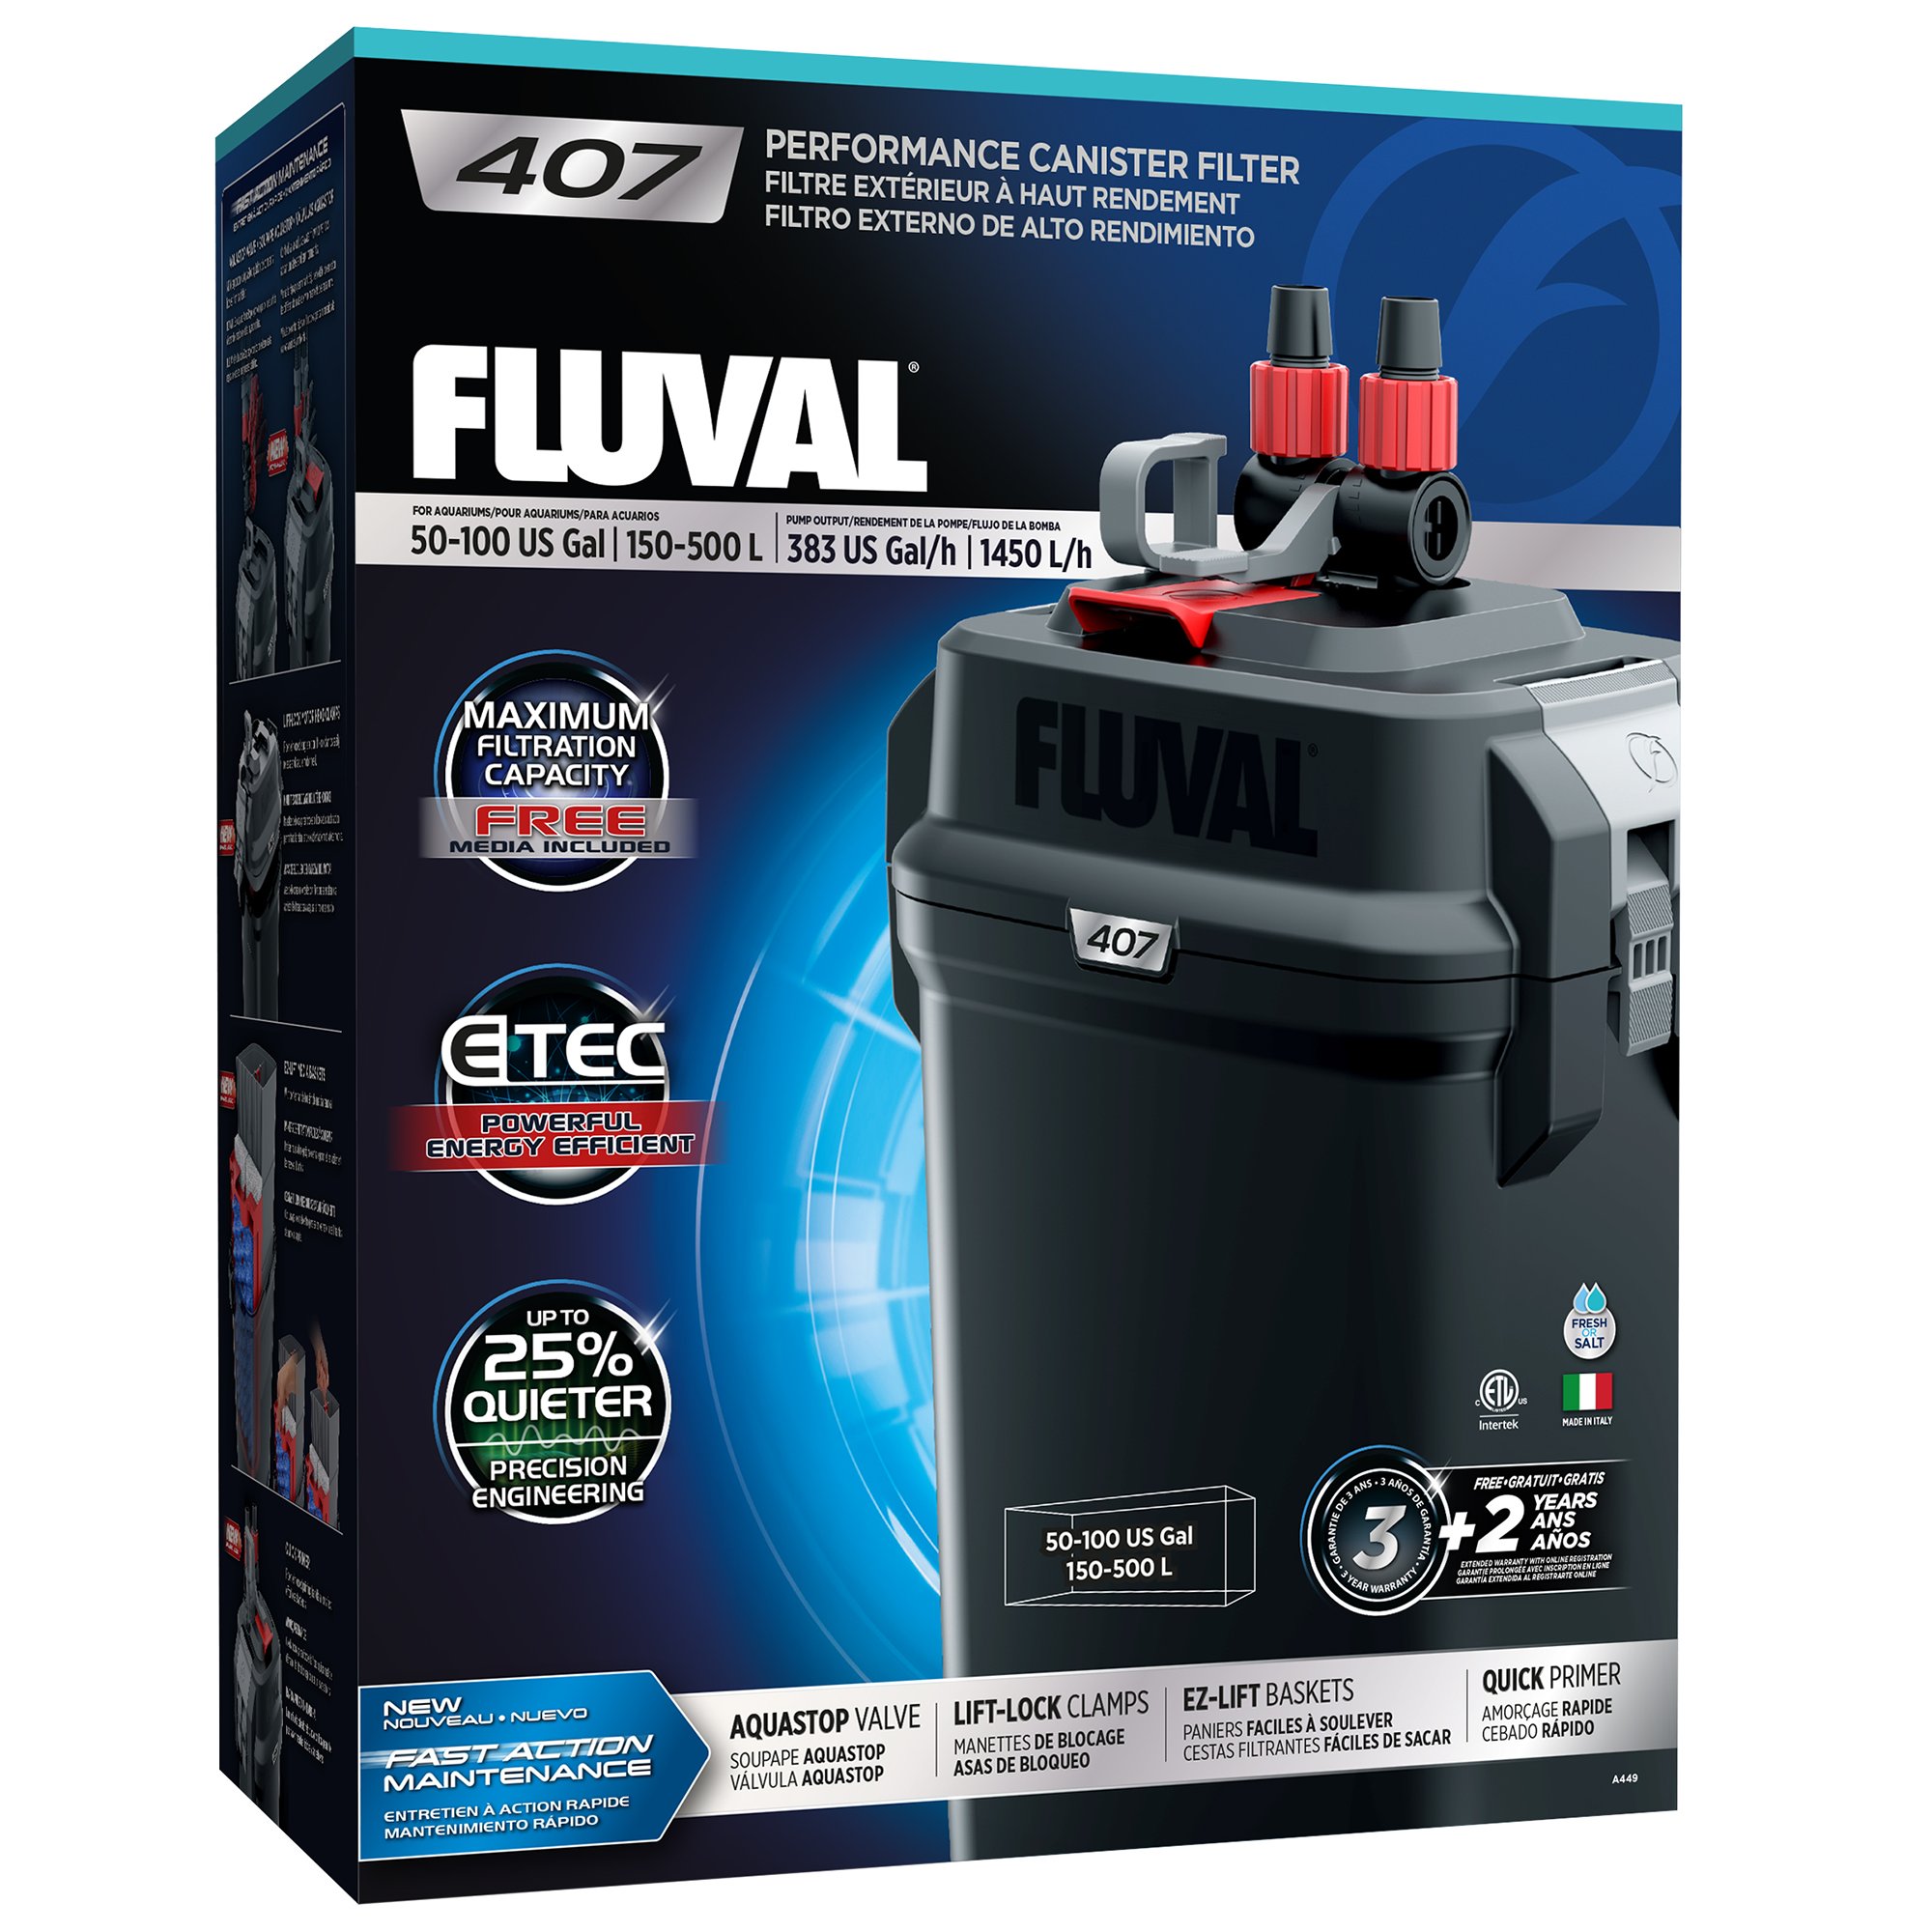 Fluval 407 Aquarium Fish Tank External Filter 1450l/h For Tanks Up To 500l